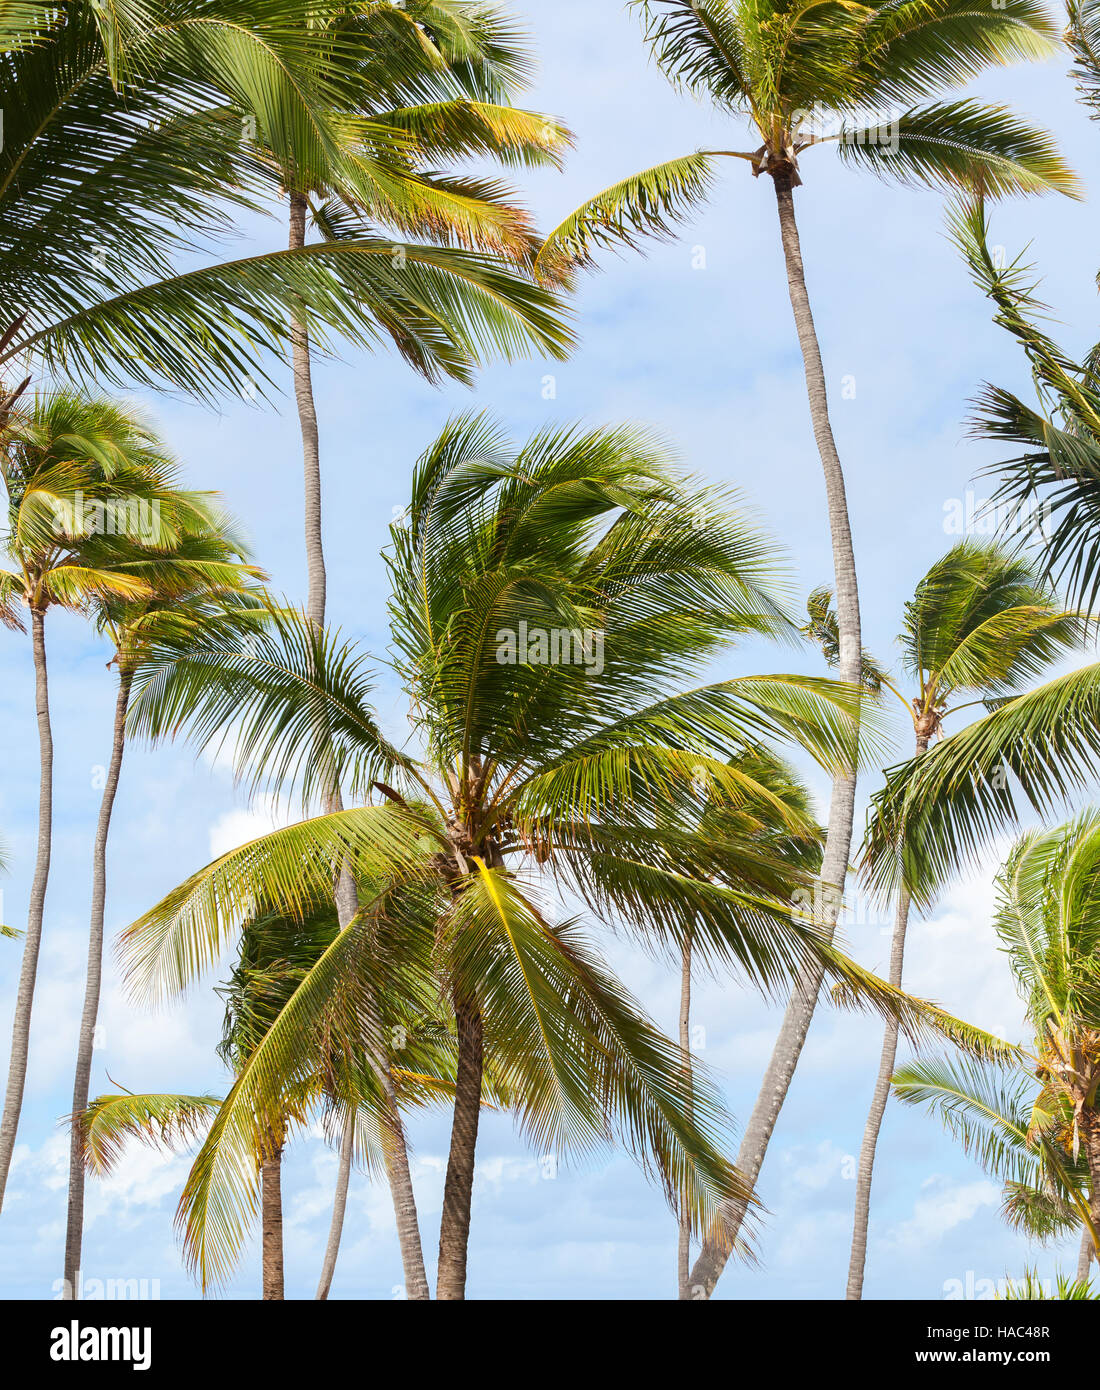 Palmen über strahlend blauen bewölkten Himmel. Dominikanische Republik Natur, Fotohintergrund Stockfoto